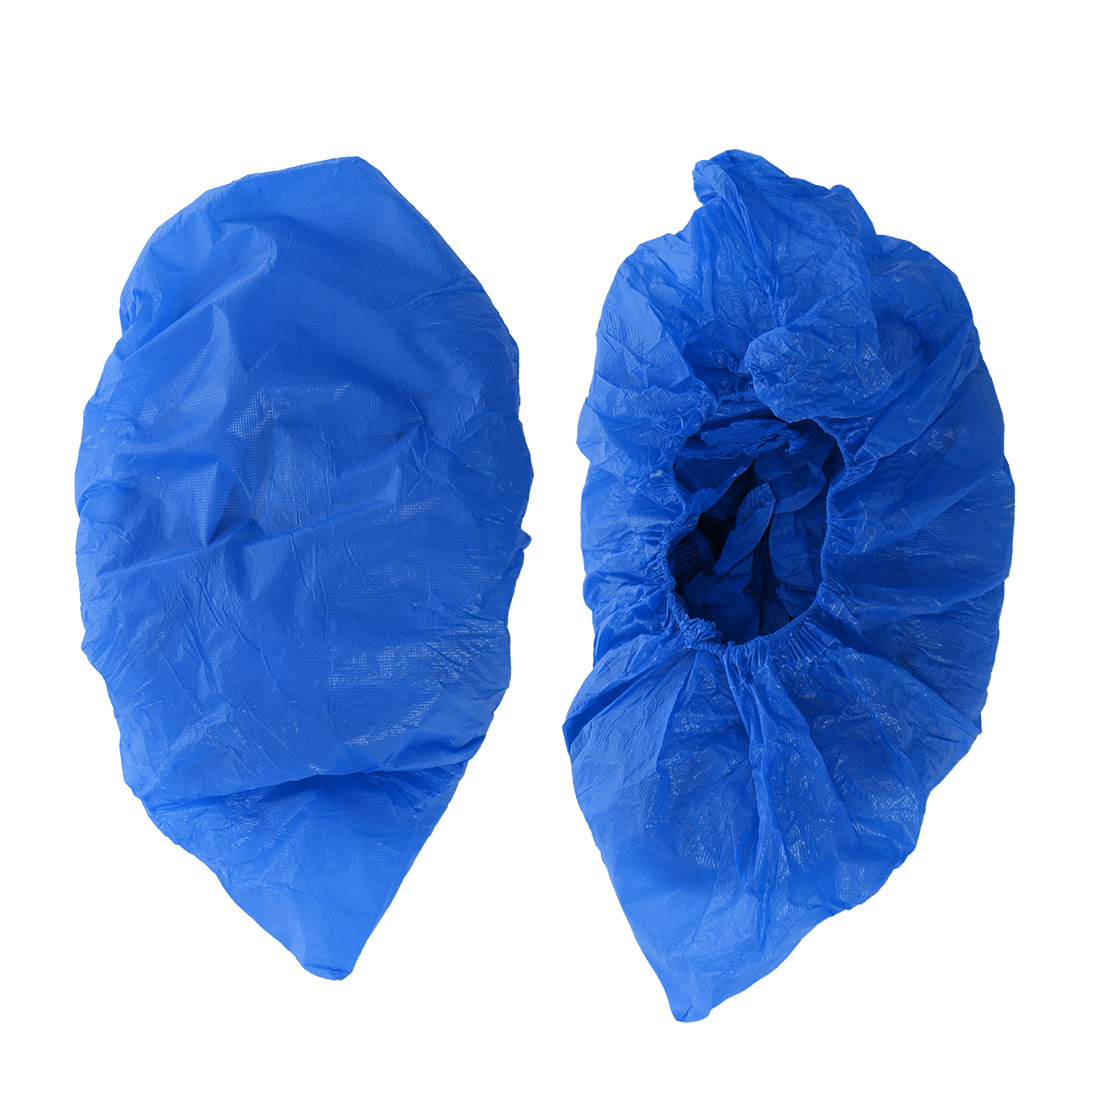 Unique Bargains Home Office Water Resistant Disposable Shoes Cover Blue 10 Pcs